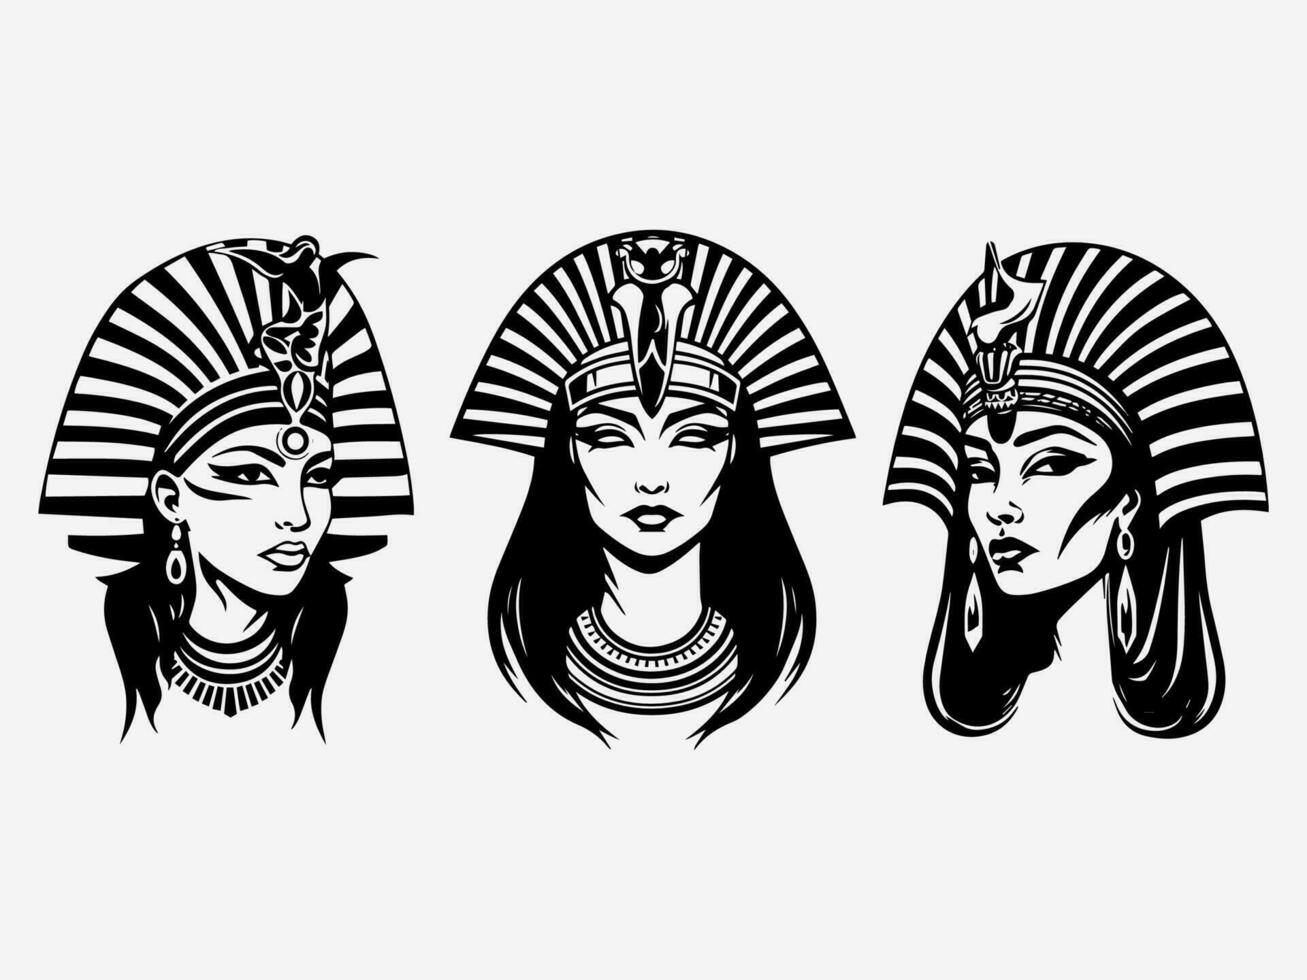 un maravilloso mano dibujado ilustración de cleopatra en un logo diseño ese capturas su legendario encanto y sofisticación. Perfecto para entretenimiento, joyas, y cultural organizaciones vector